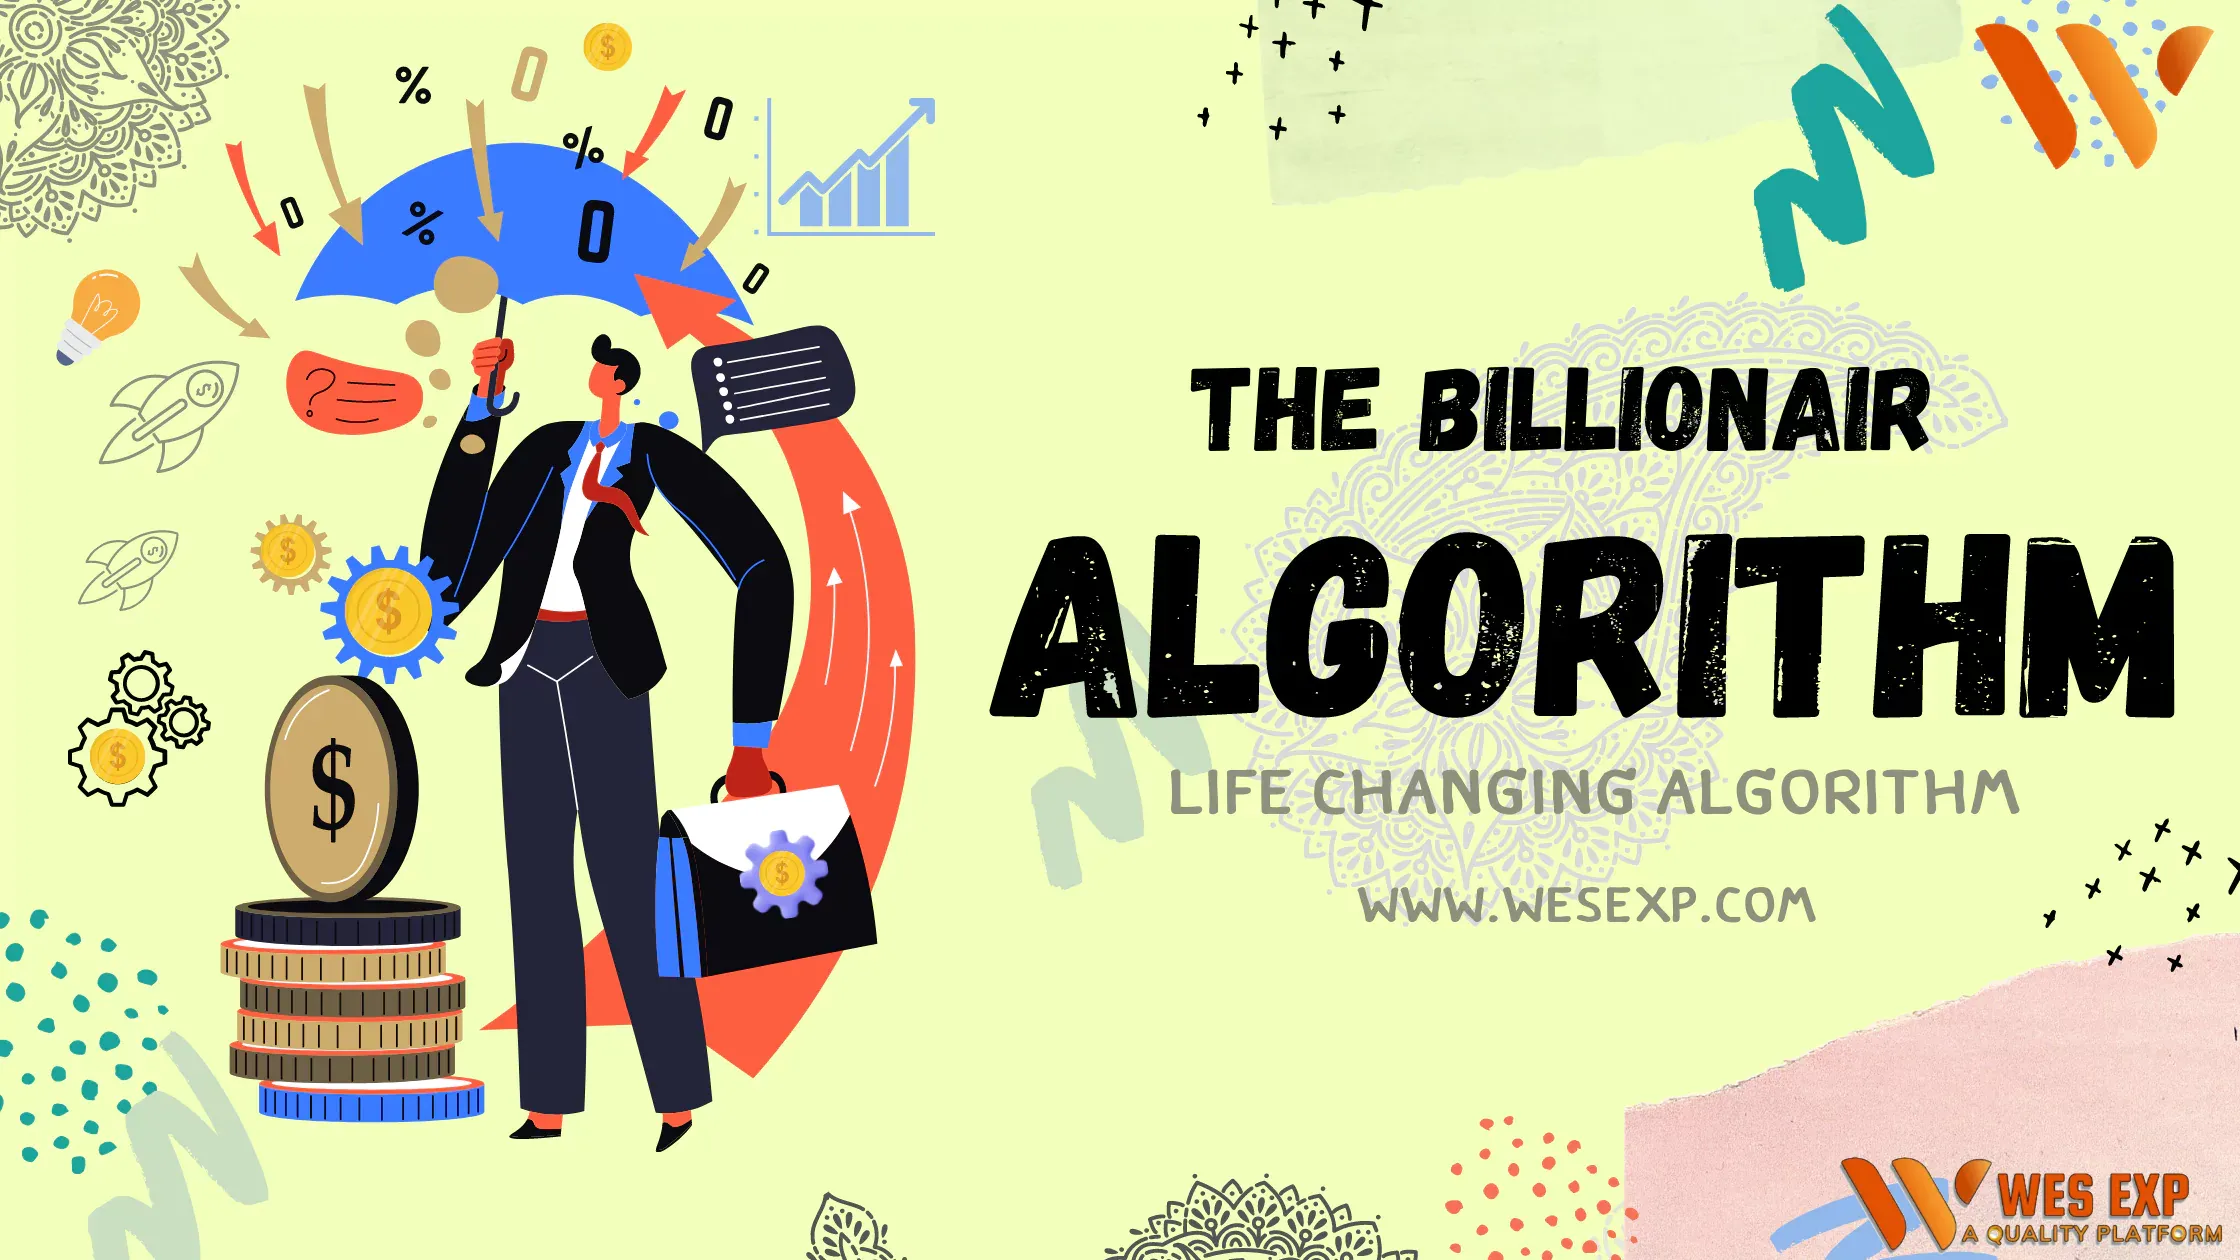 The Billionaire Algorithm